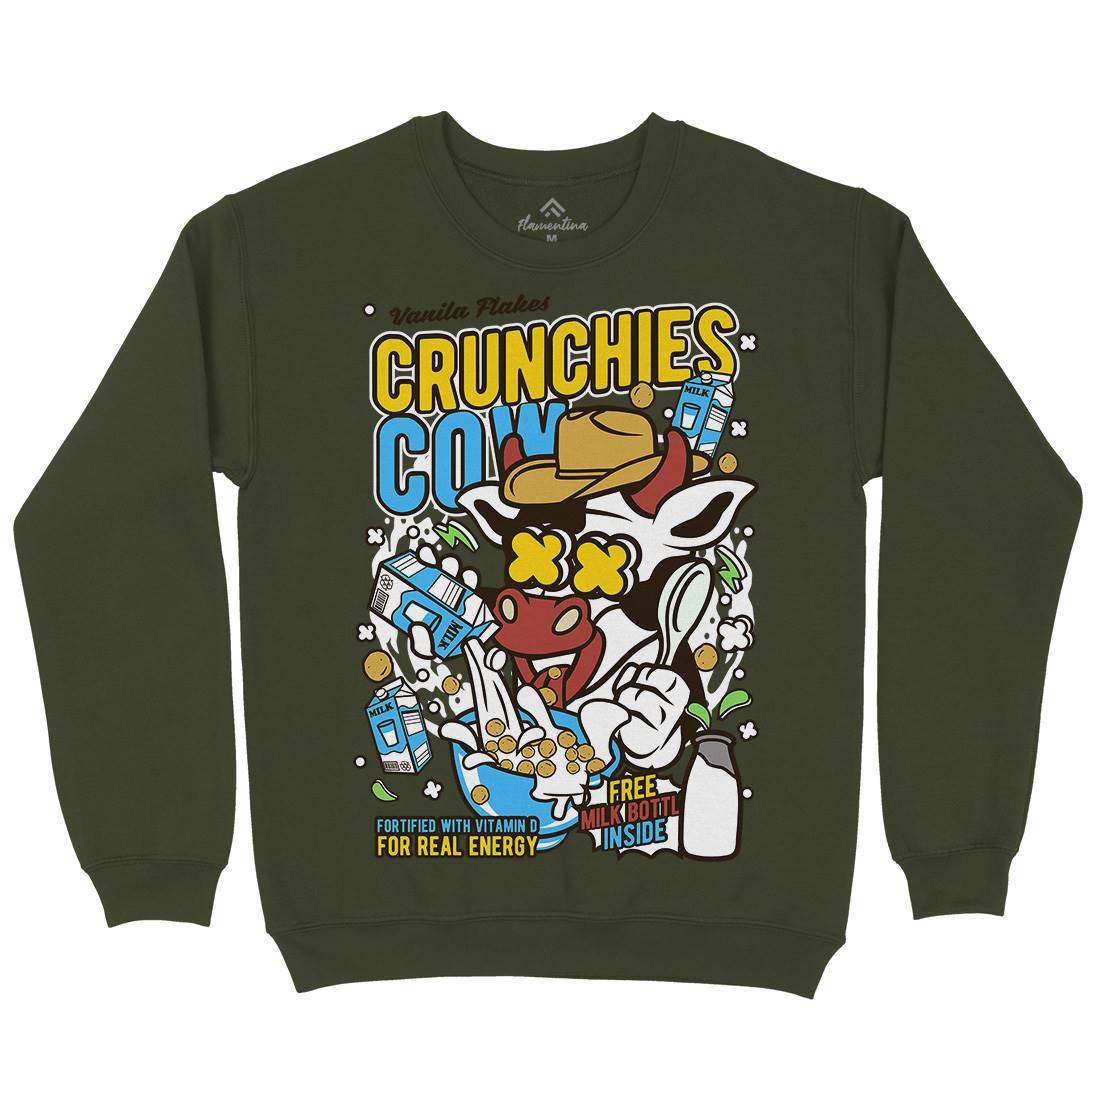 Crunchies Cow Mens Crew Neck Sweatshirt Food C533